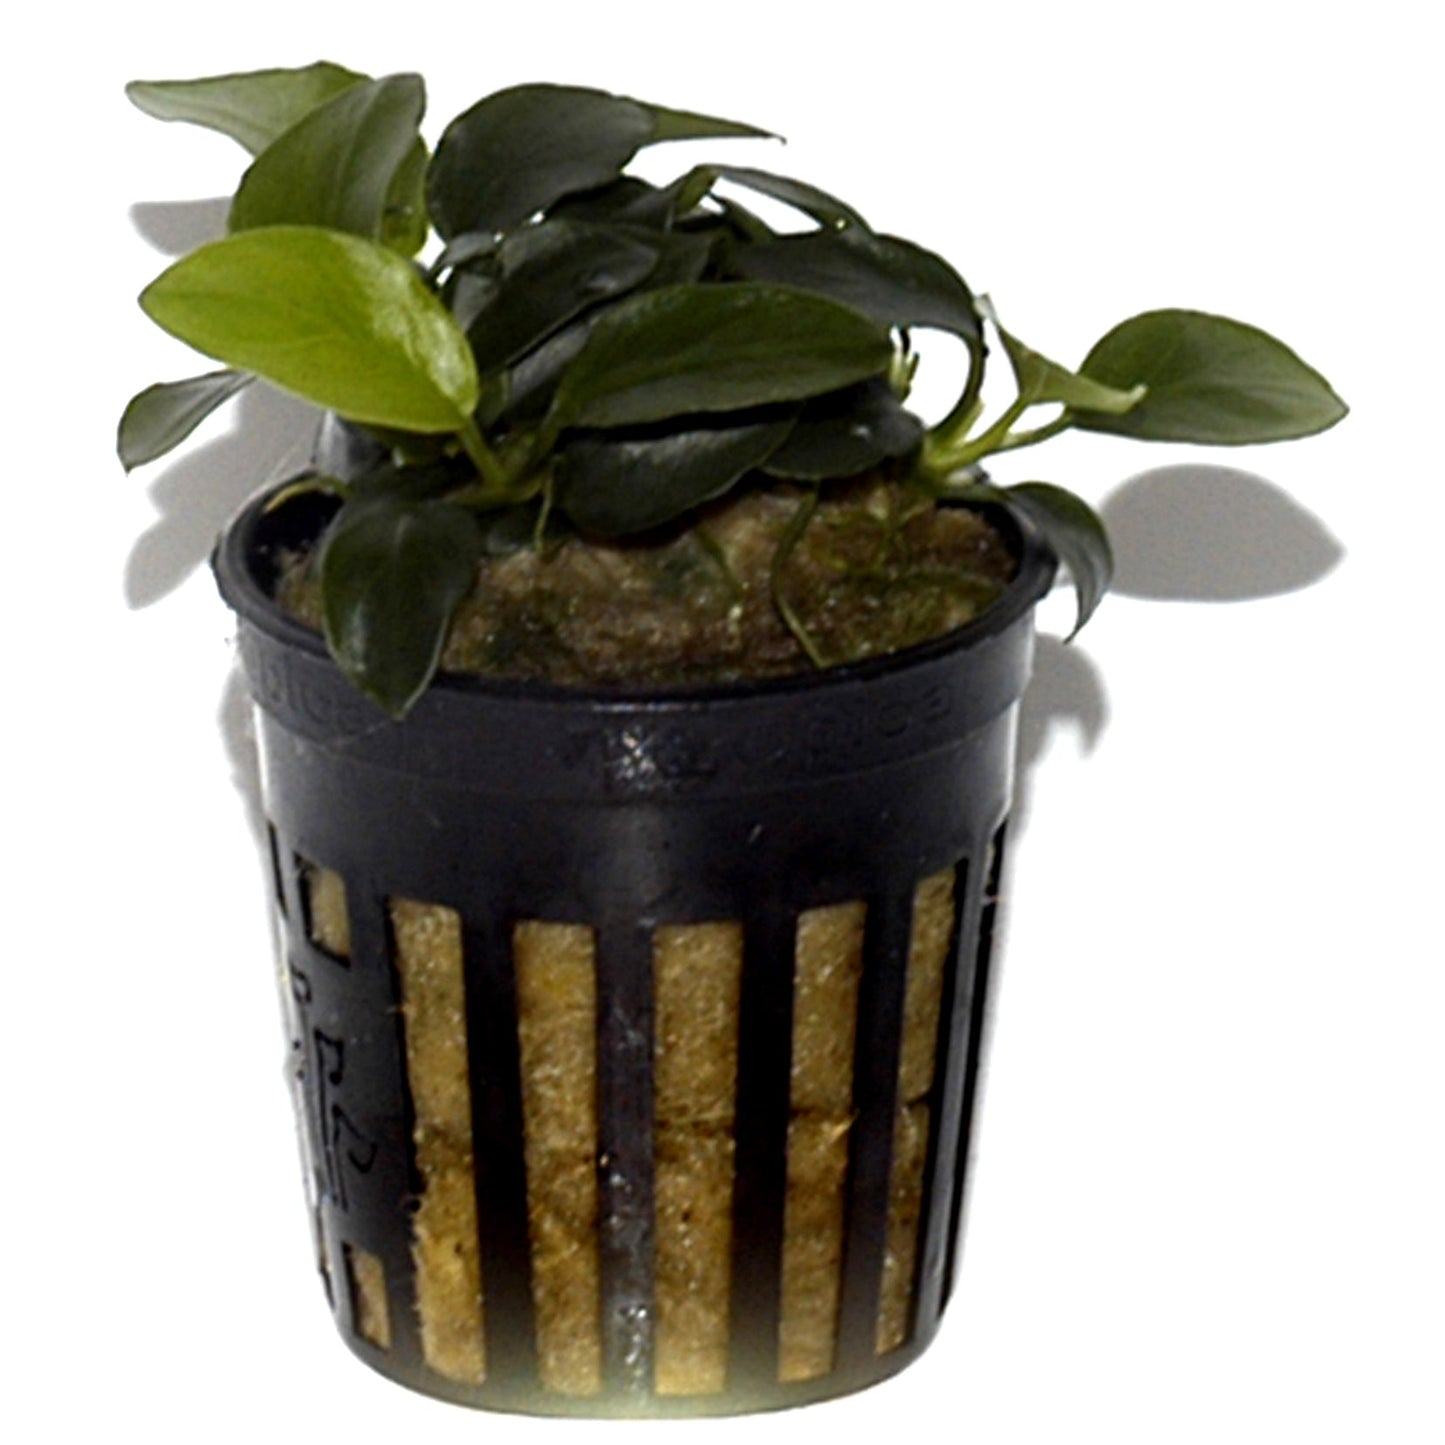 Anubias barteri 'Petite' 5cm Pot - EU Grown